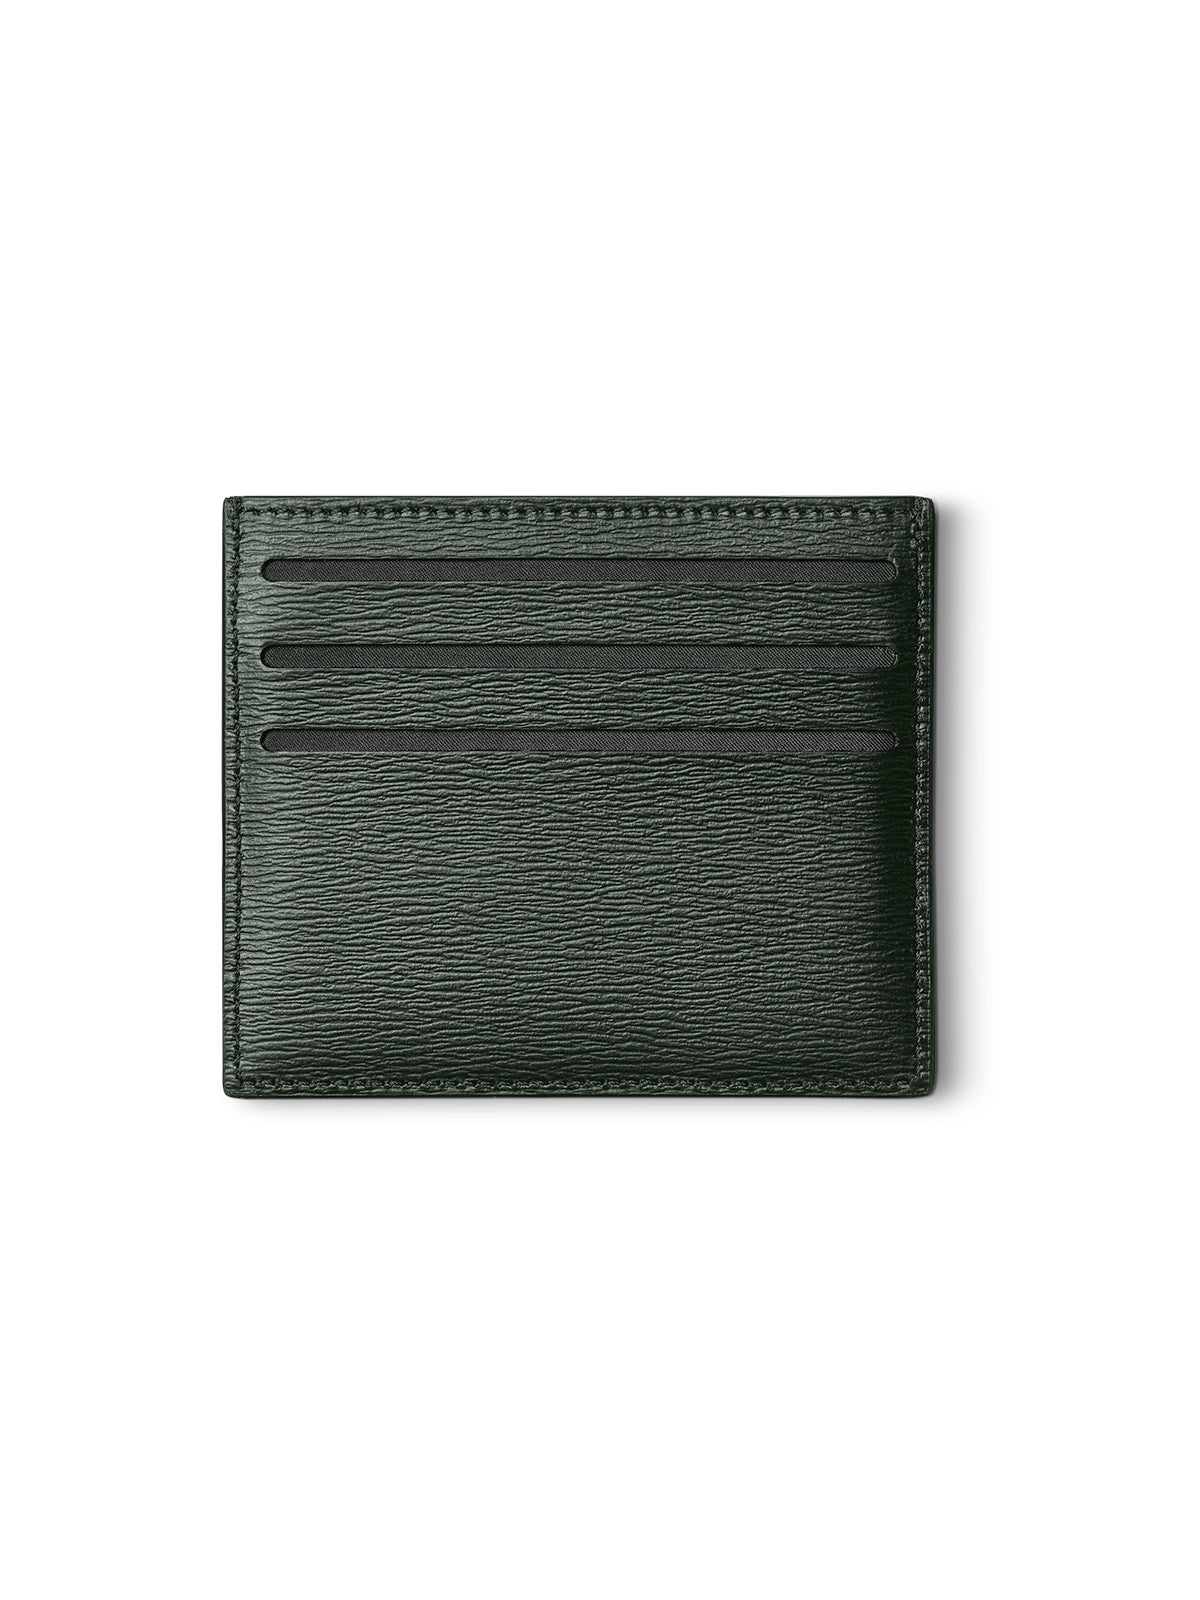 Montblanc Meisterstuck Green Leather Pocket Holder MB129254